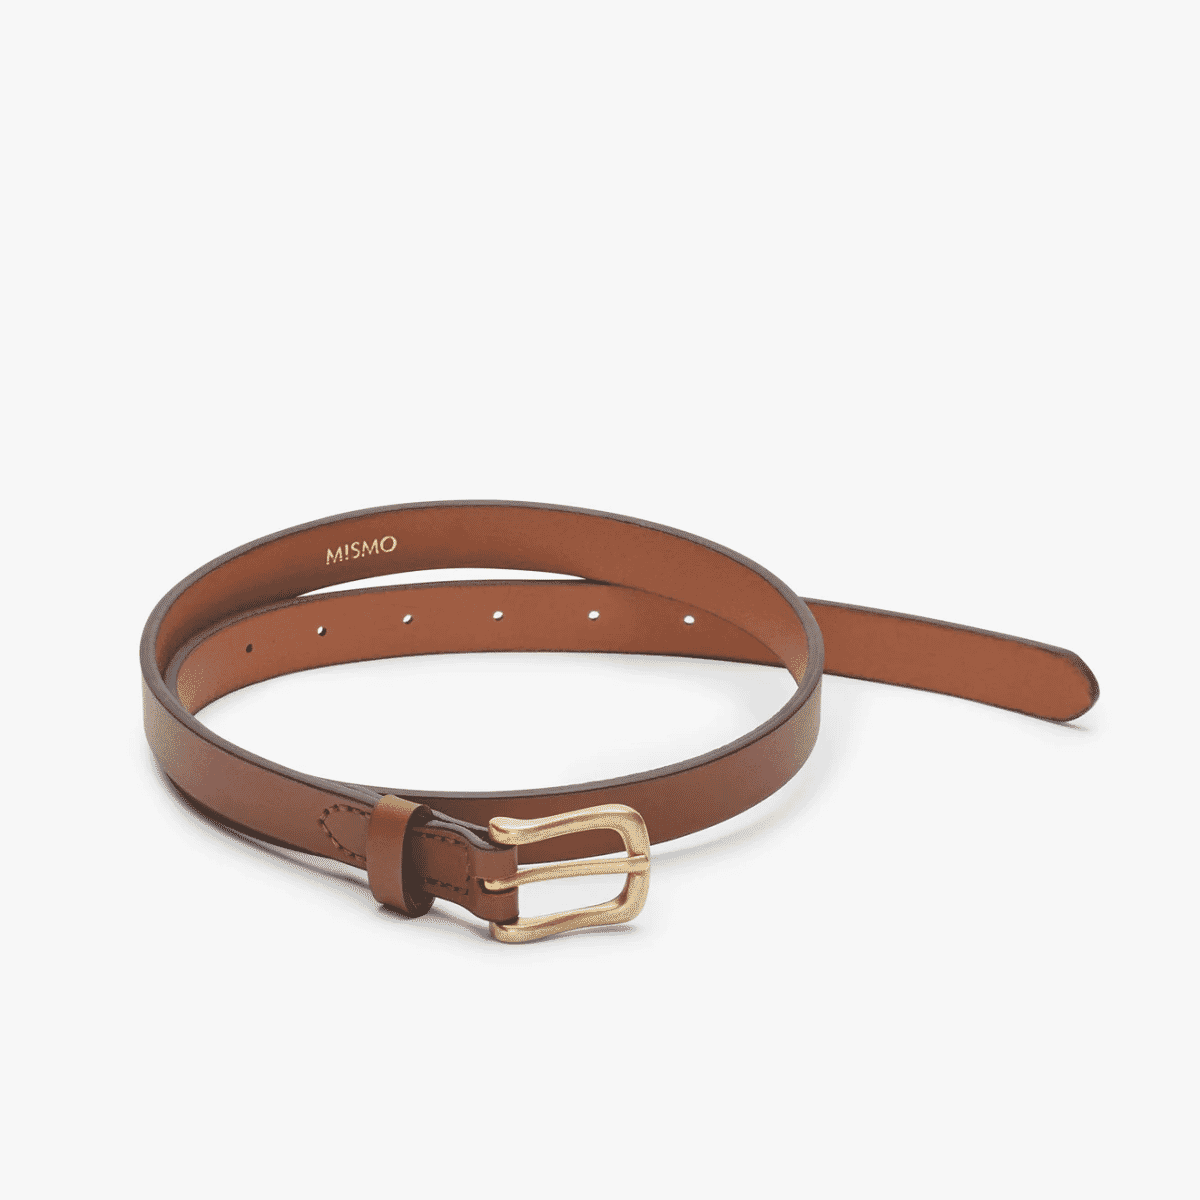 Premium Photo  Handmade exquisite men's leather belt